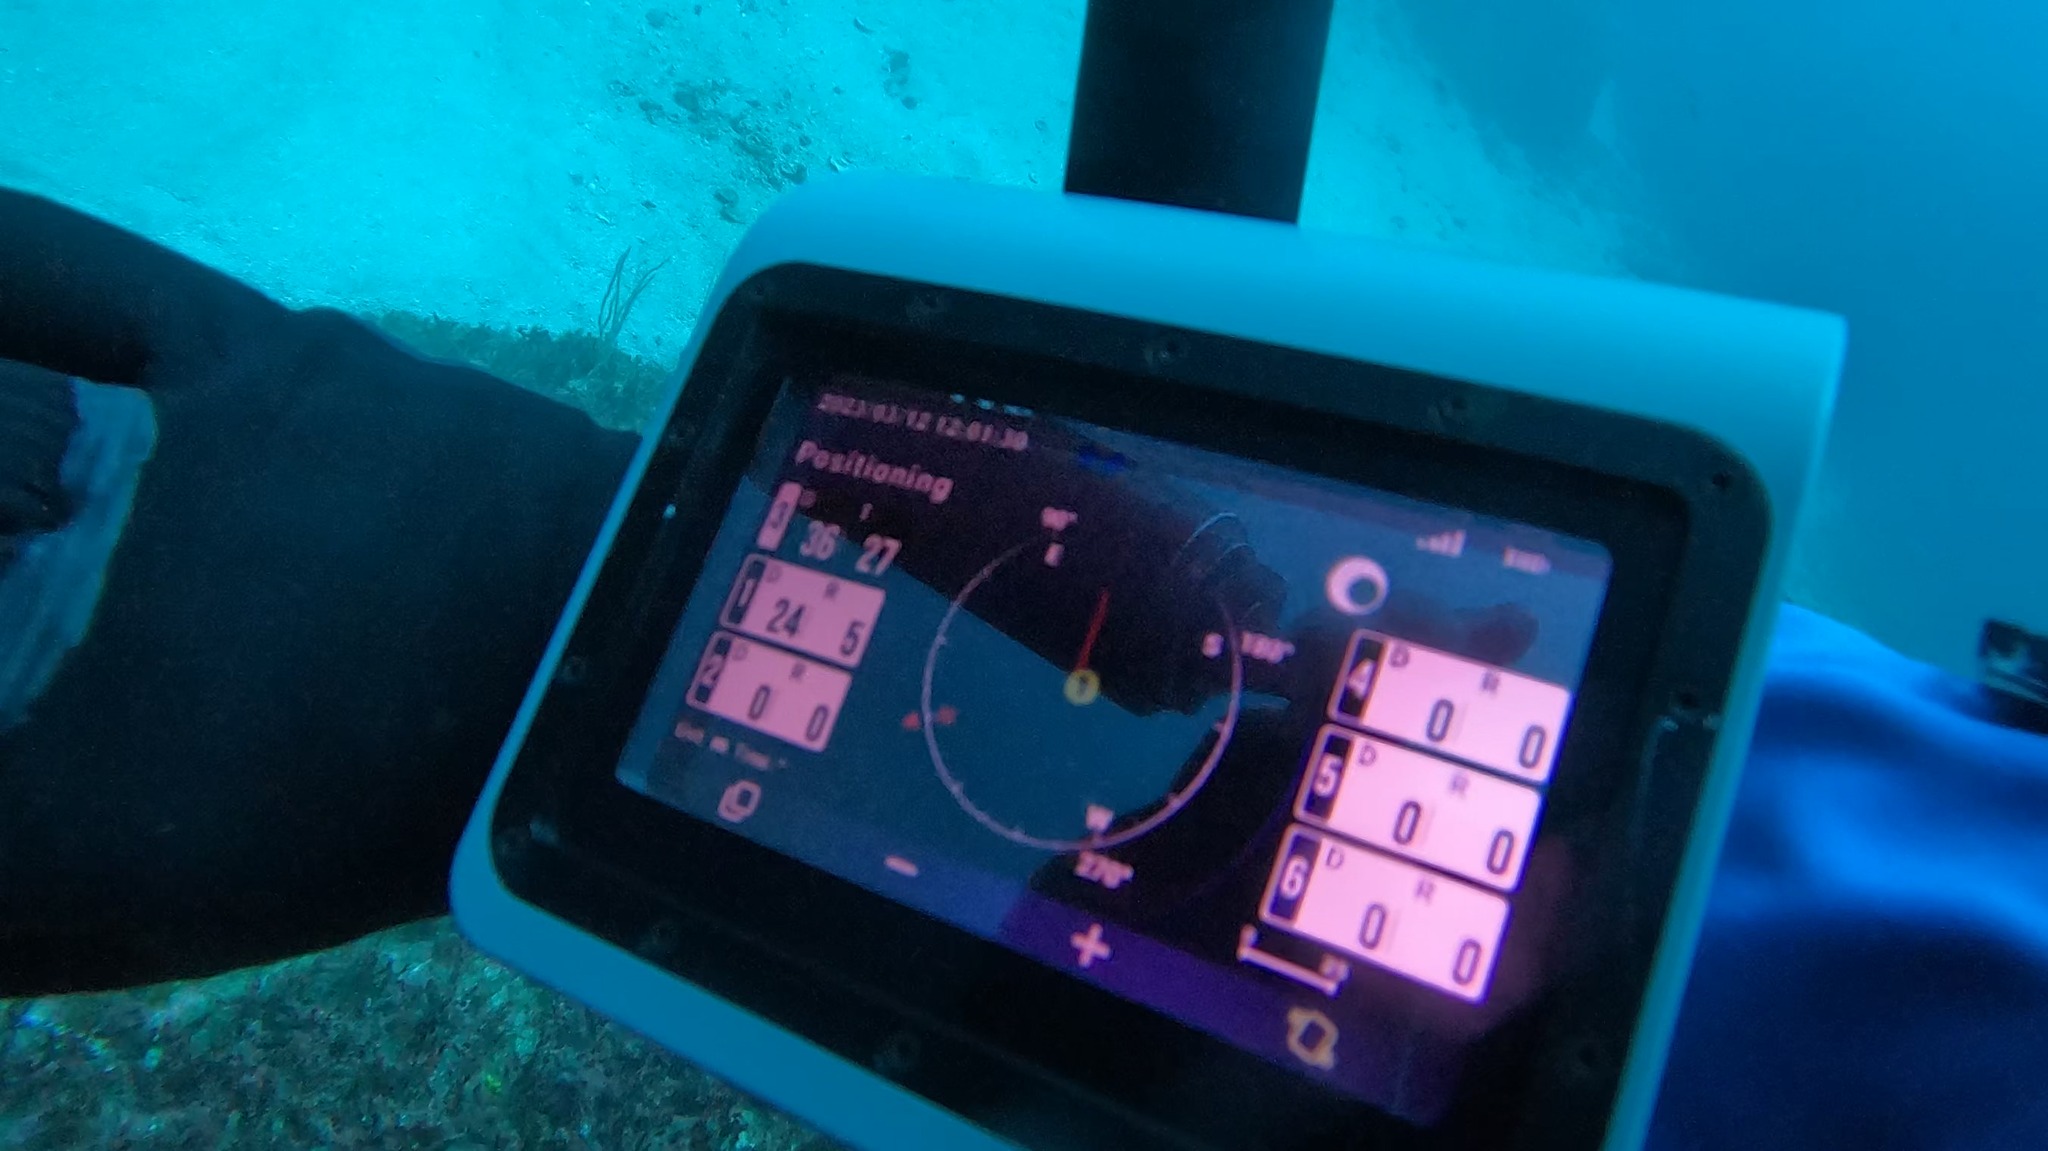 意大利、波兰潜水员使用志蓝技术水下定位通信装备提升协同效率